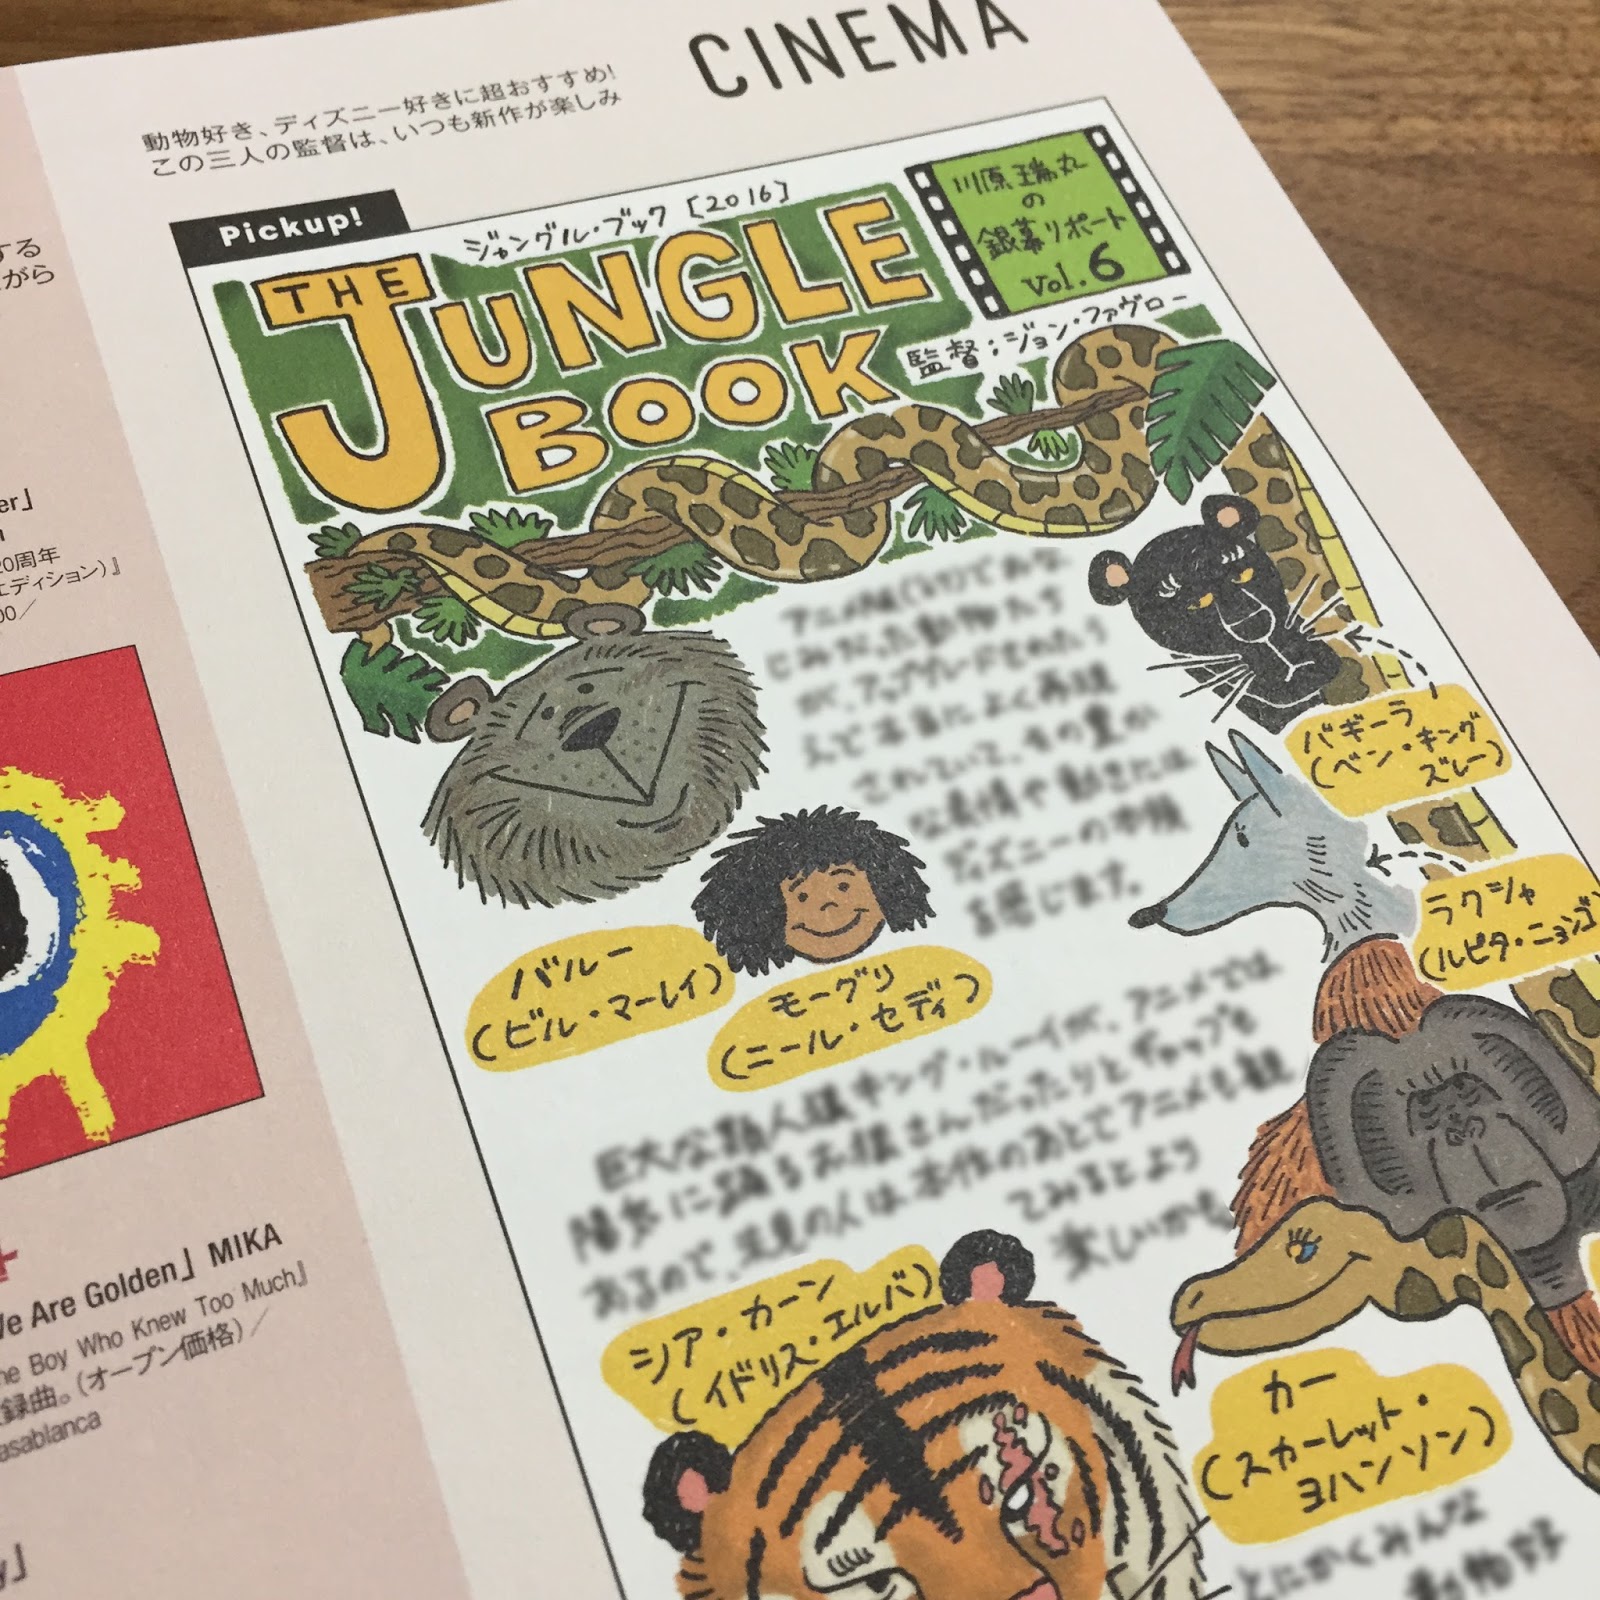 ジャングル ブック 1967年の映画 の画像 原寸画像検索